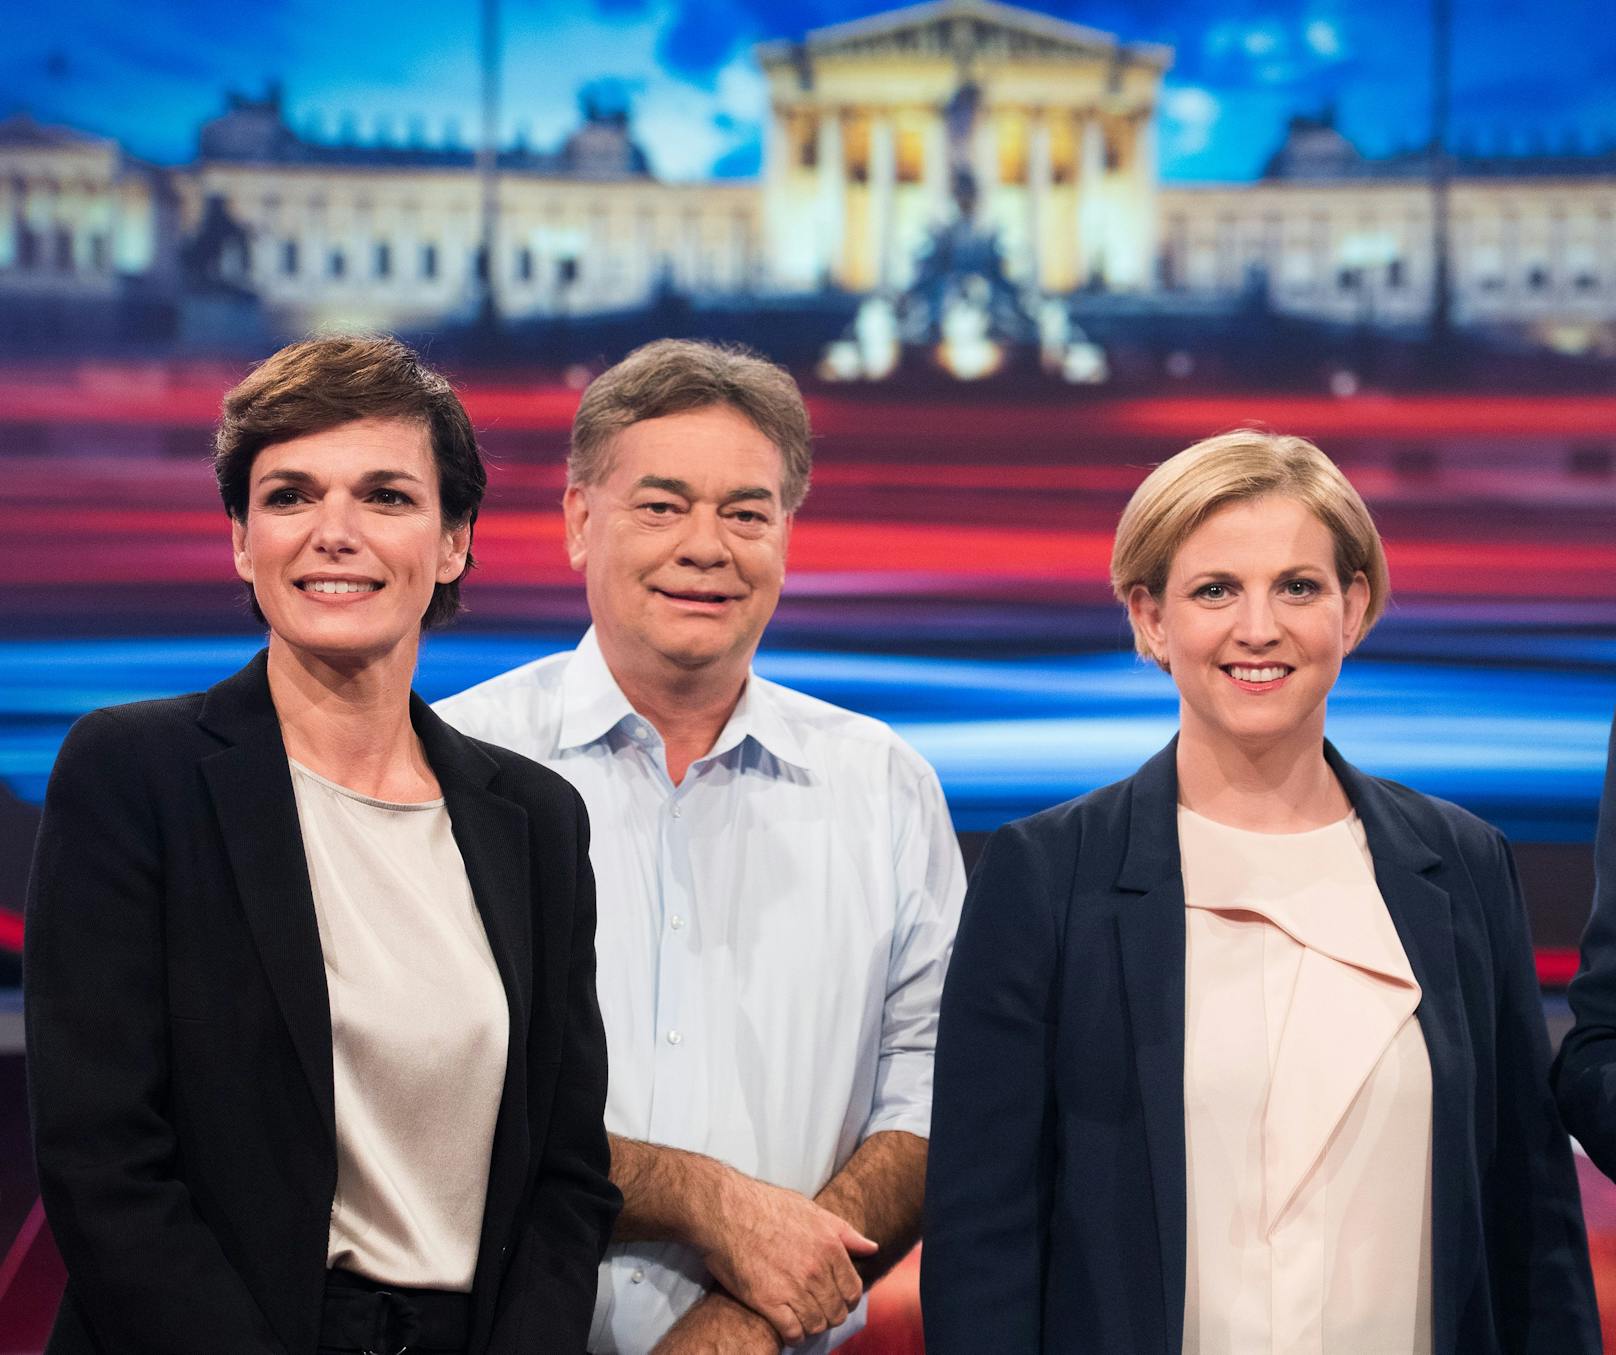 Könnten erstmals zusammen regieren: SPÖ-Chefin Pamela Rendi-Wagner, Grünen-Chef Werner Kogler und NEOS-Chefin Beate Meinl-Reisinger.